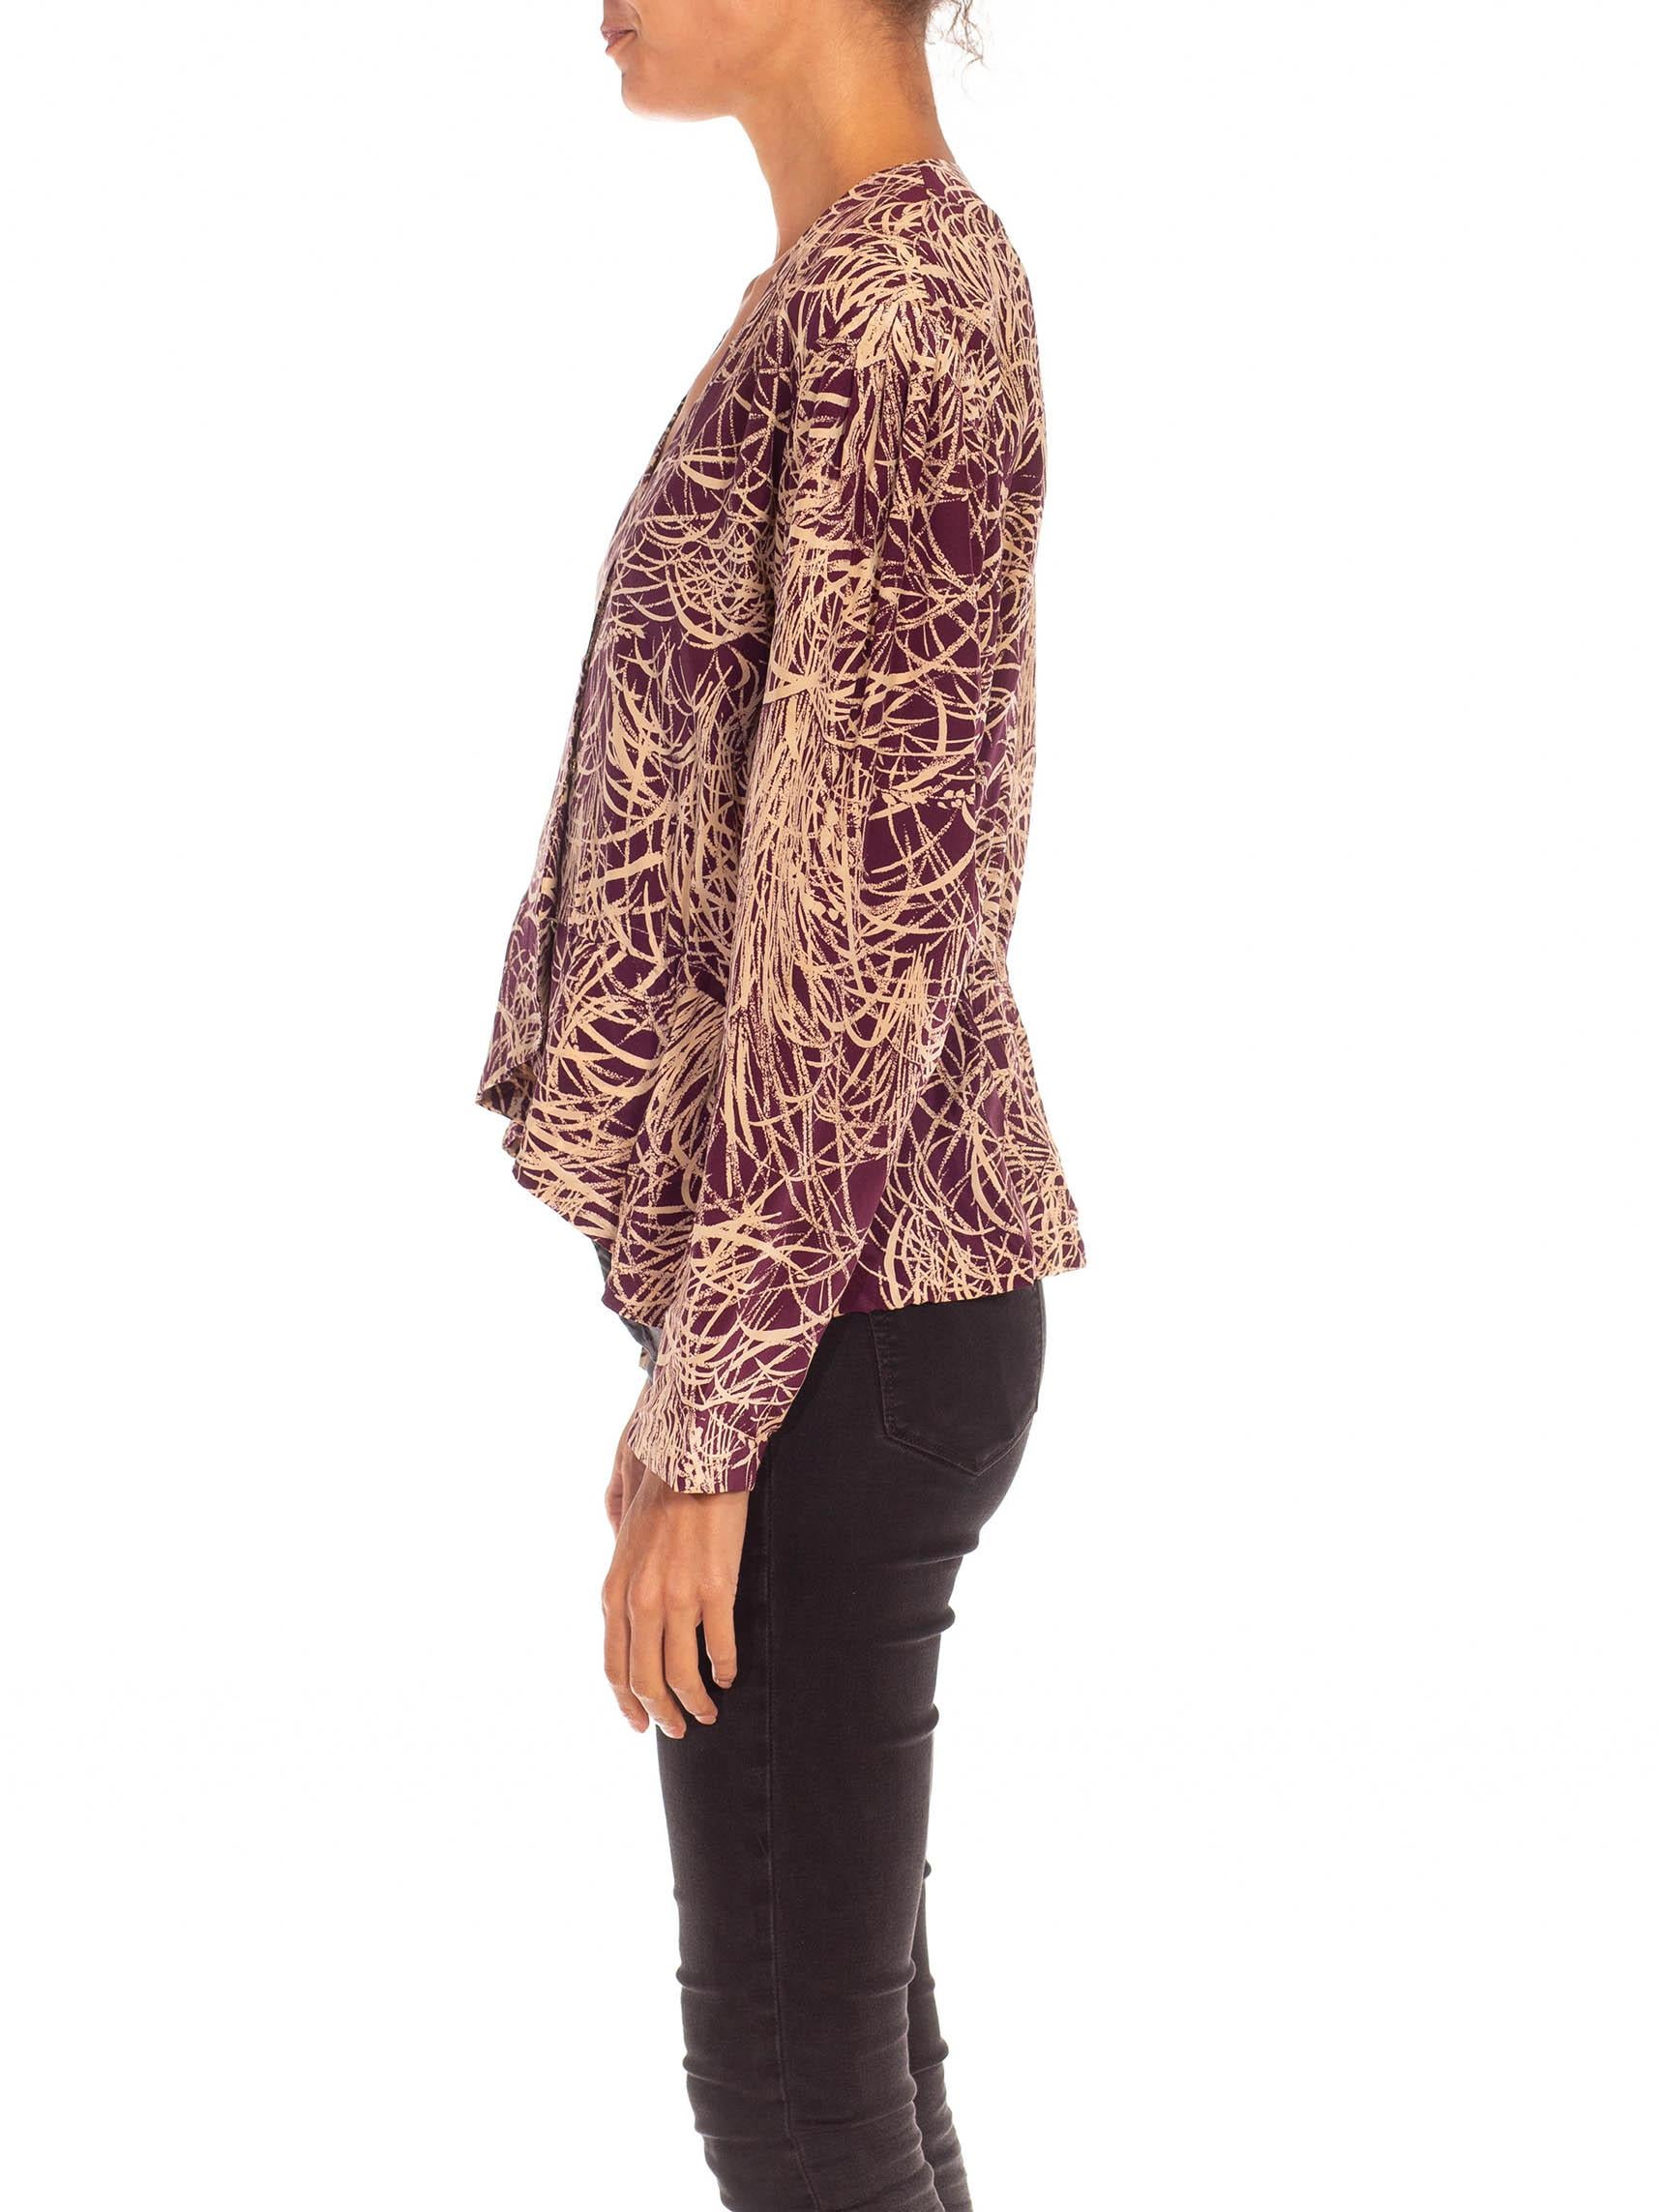 purple leopard print blouse